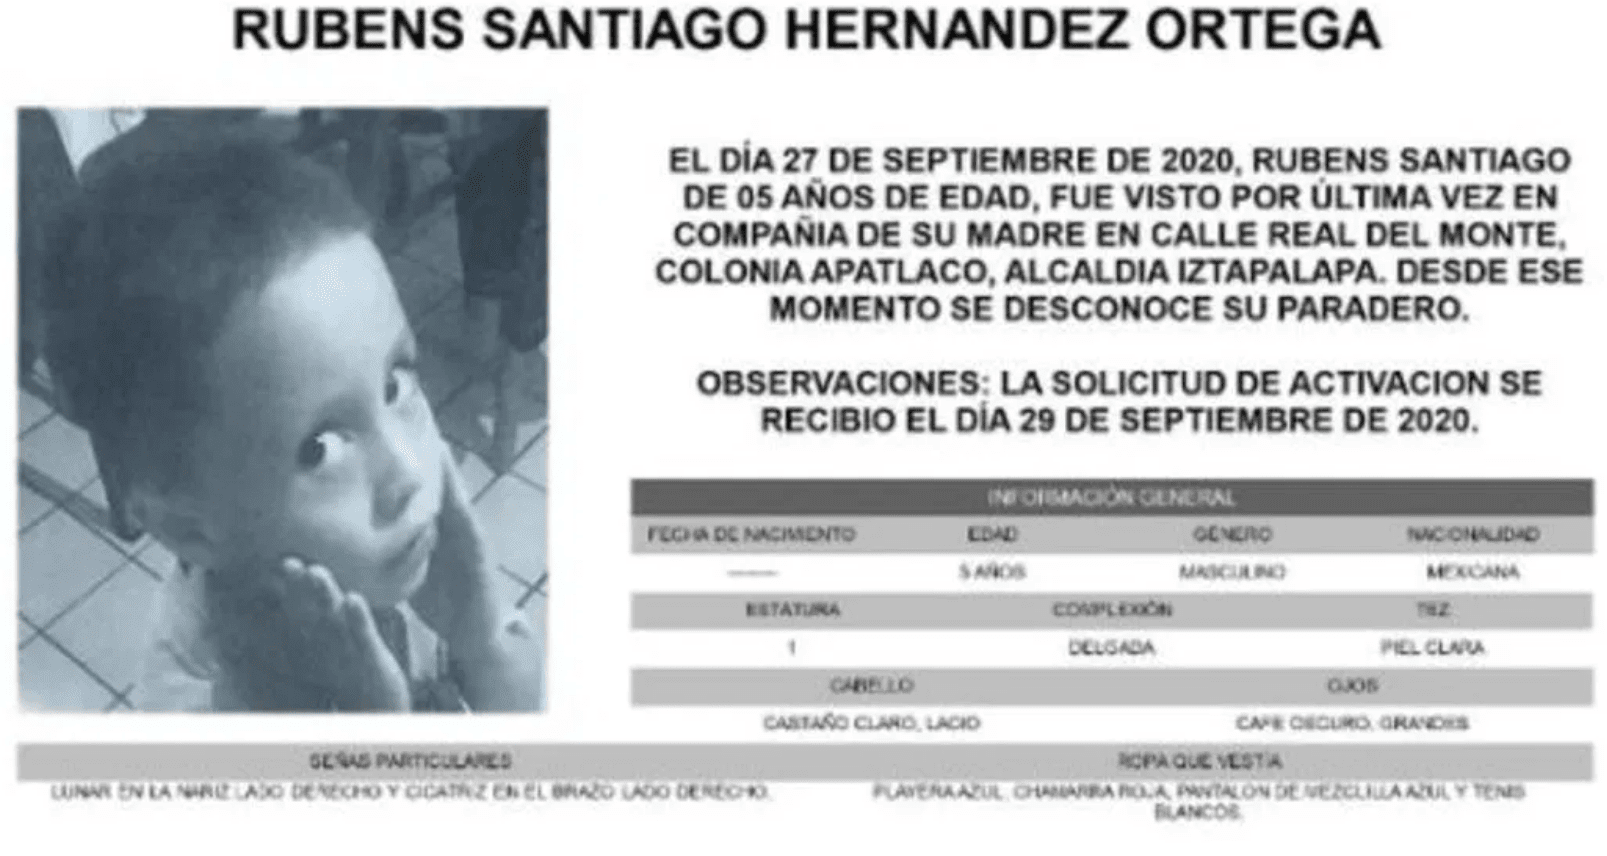 Buscan a Rubens Santiago Hernández Ortega, activan #AlertaAmber